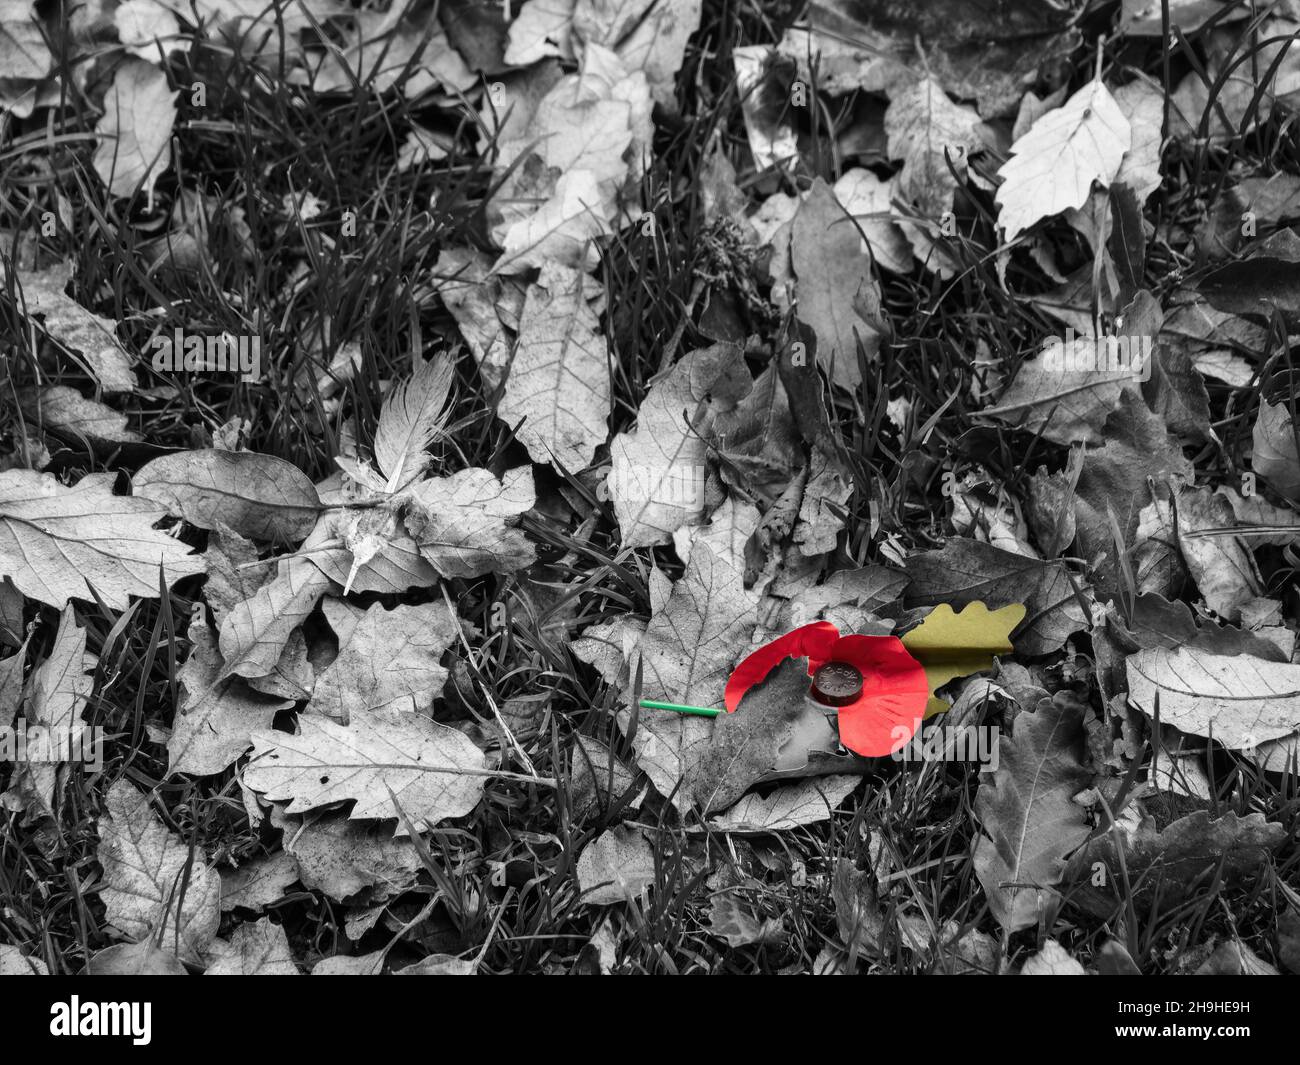 Ricordo giorno papavero caduto tra le foglie autunnali. Immagine triste. Foto Stock